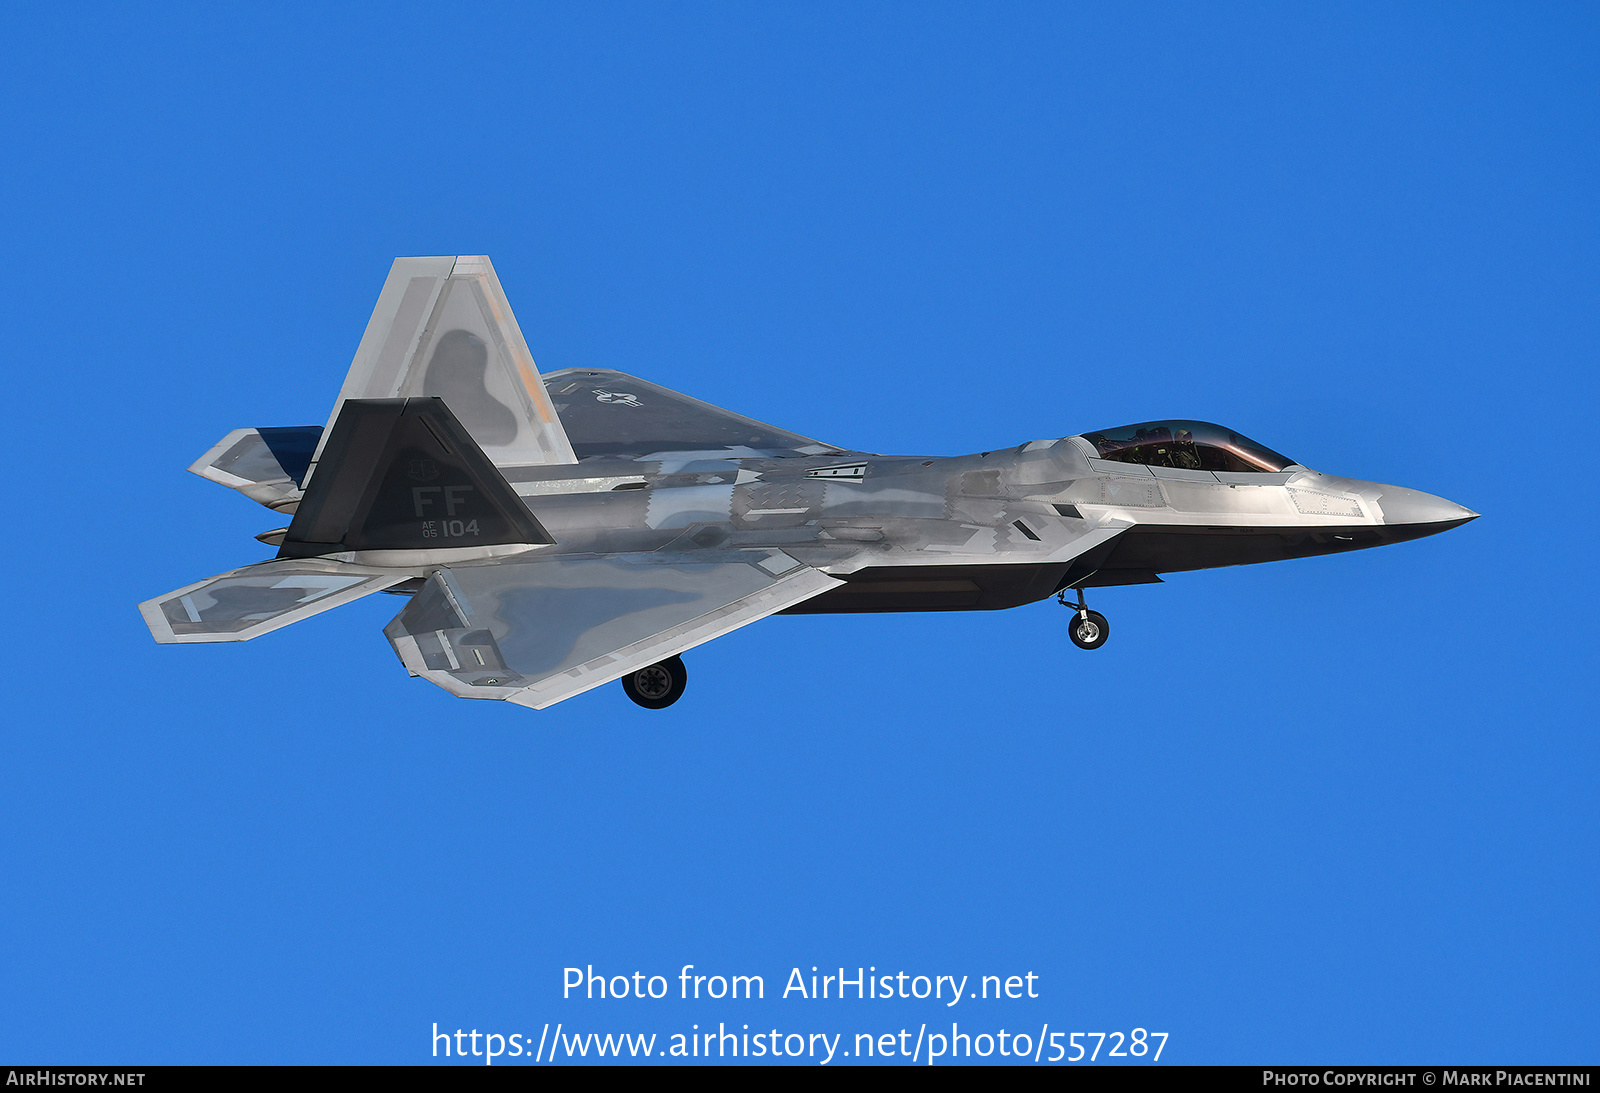 Aircraft Photo of 054104 / AF05104 Lockheed Martin F22A Raptor